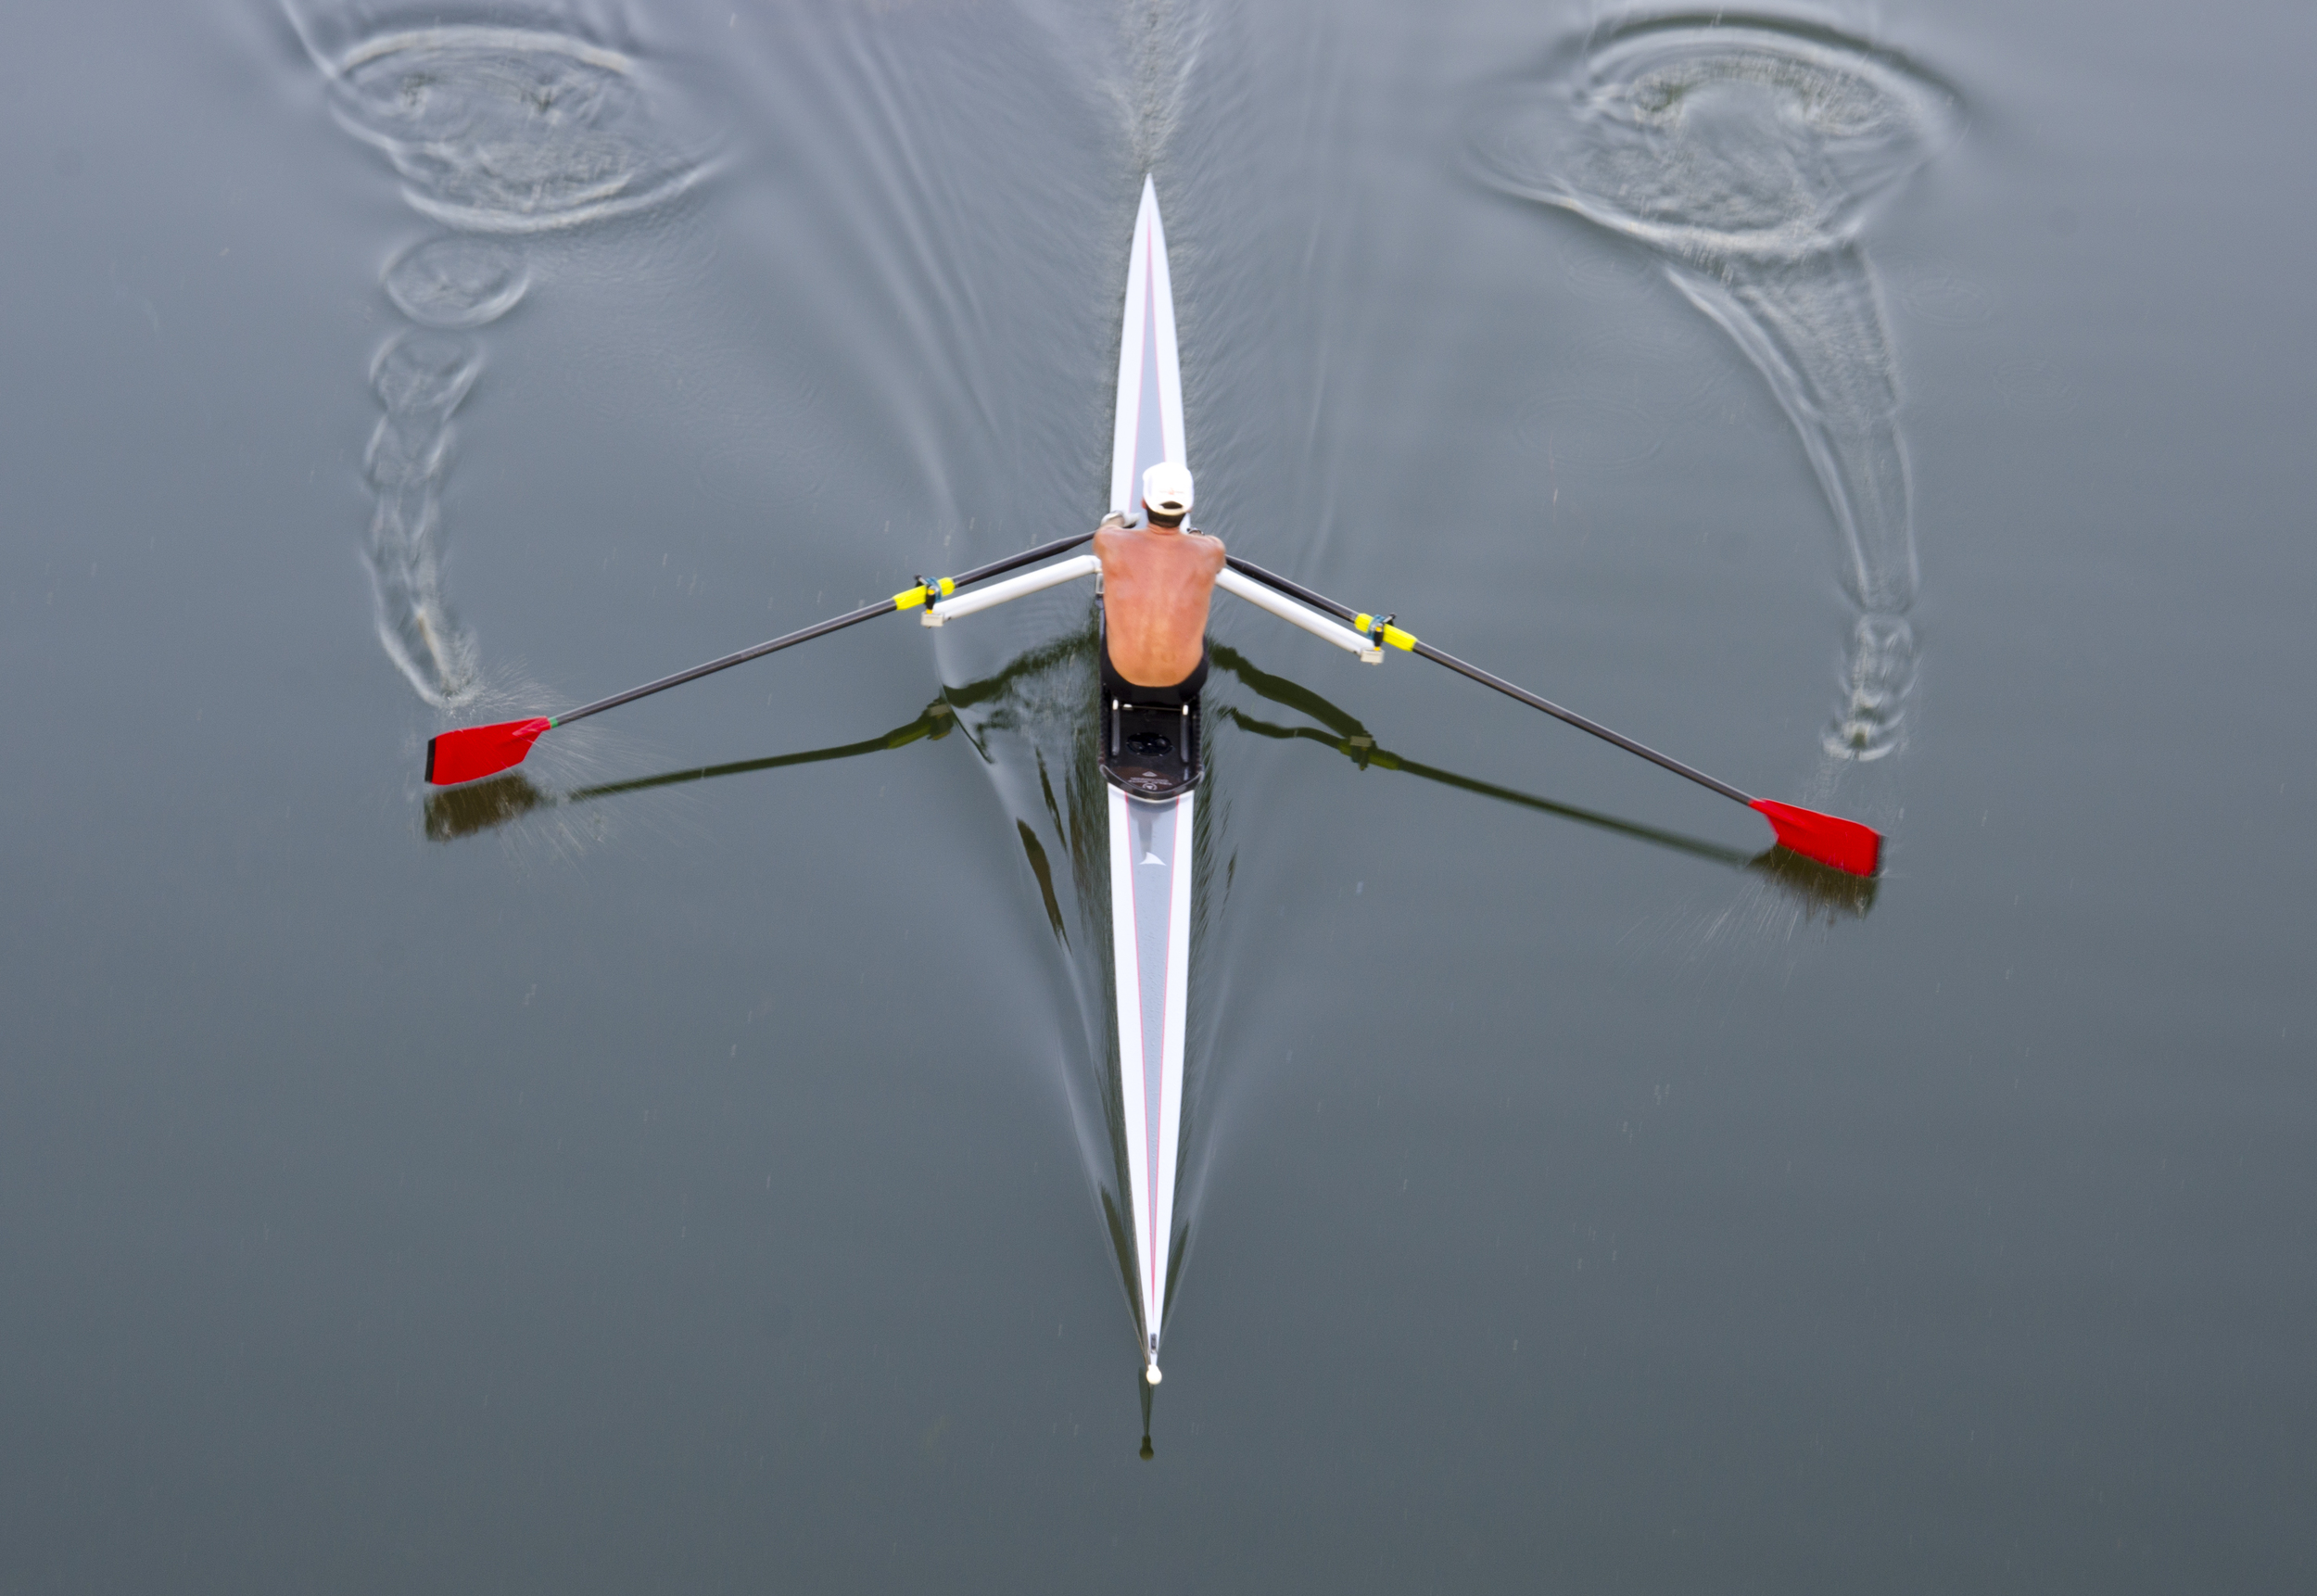 rowing 1.jpg